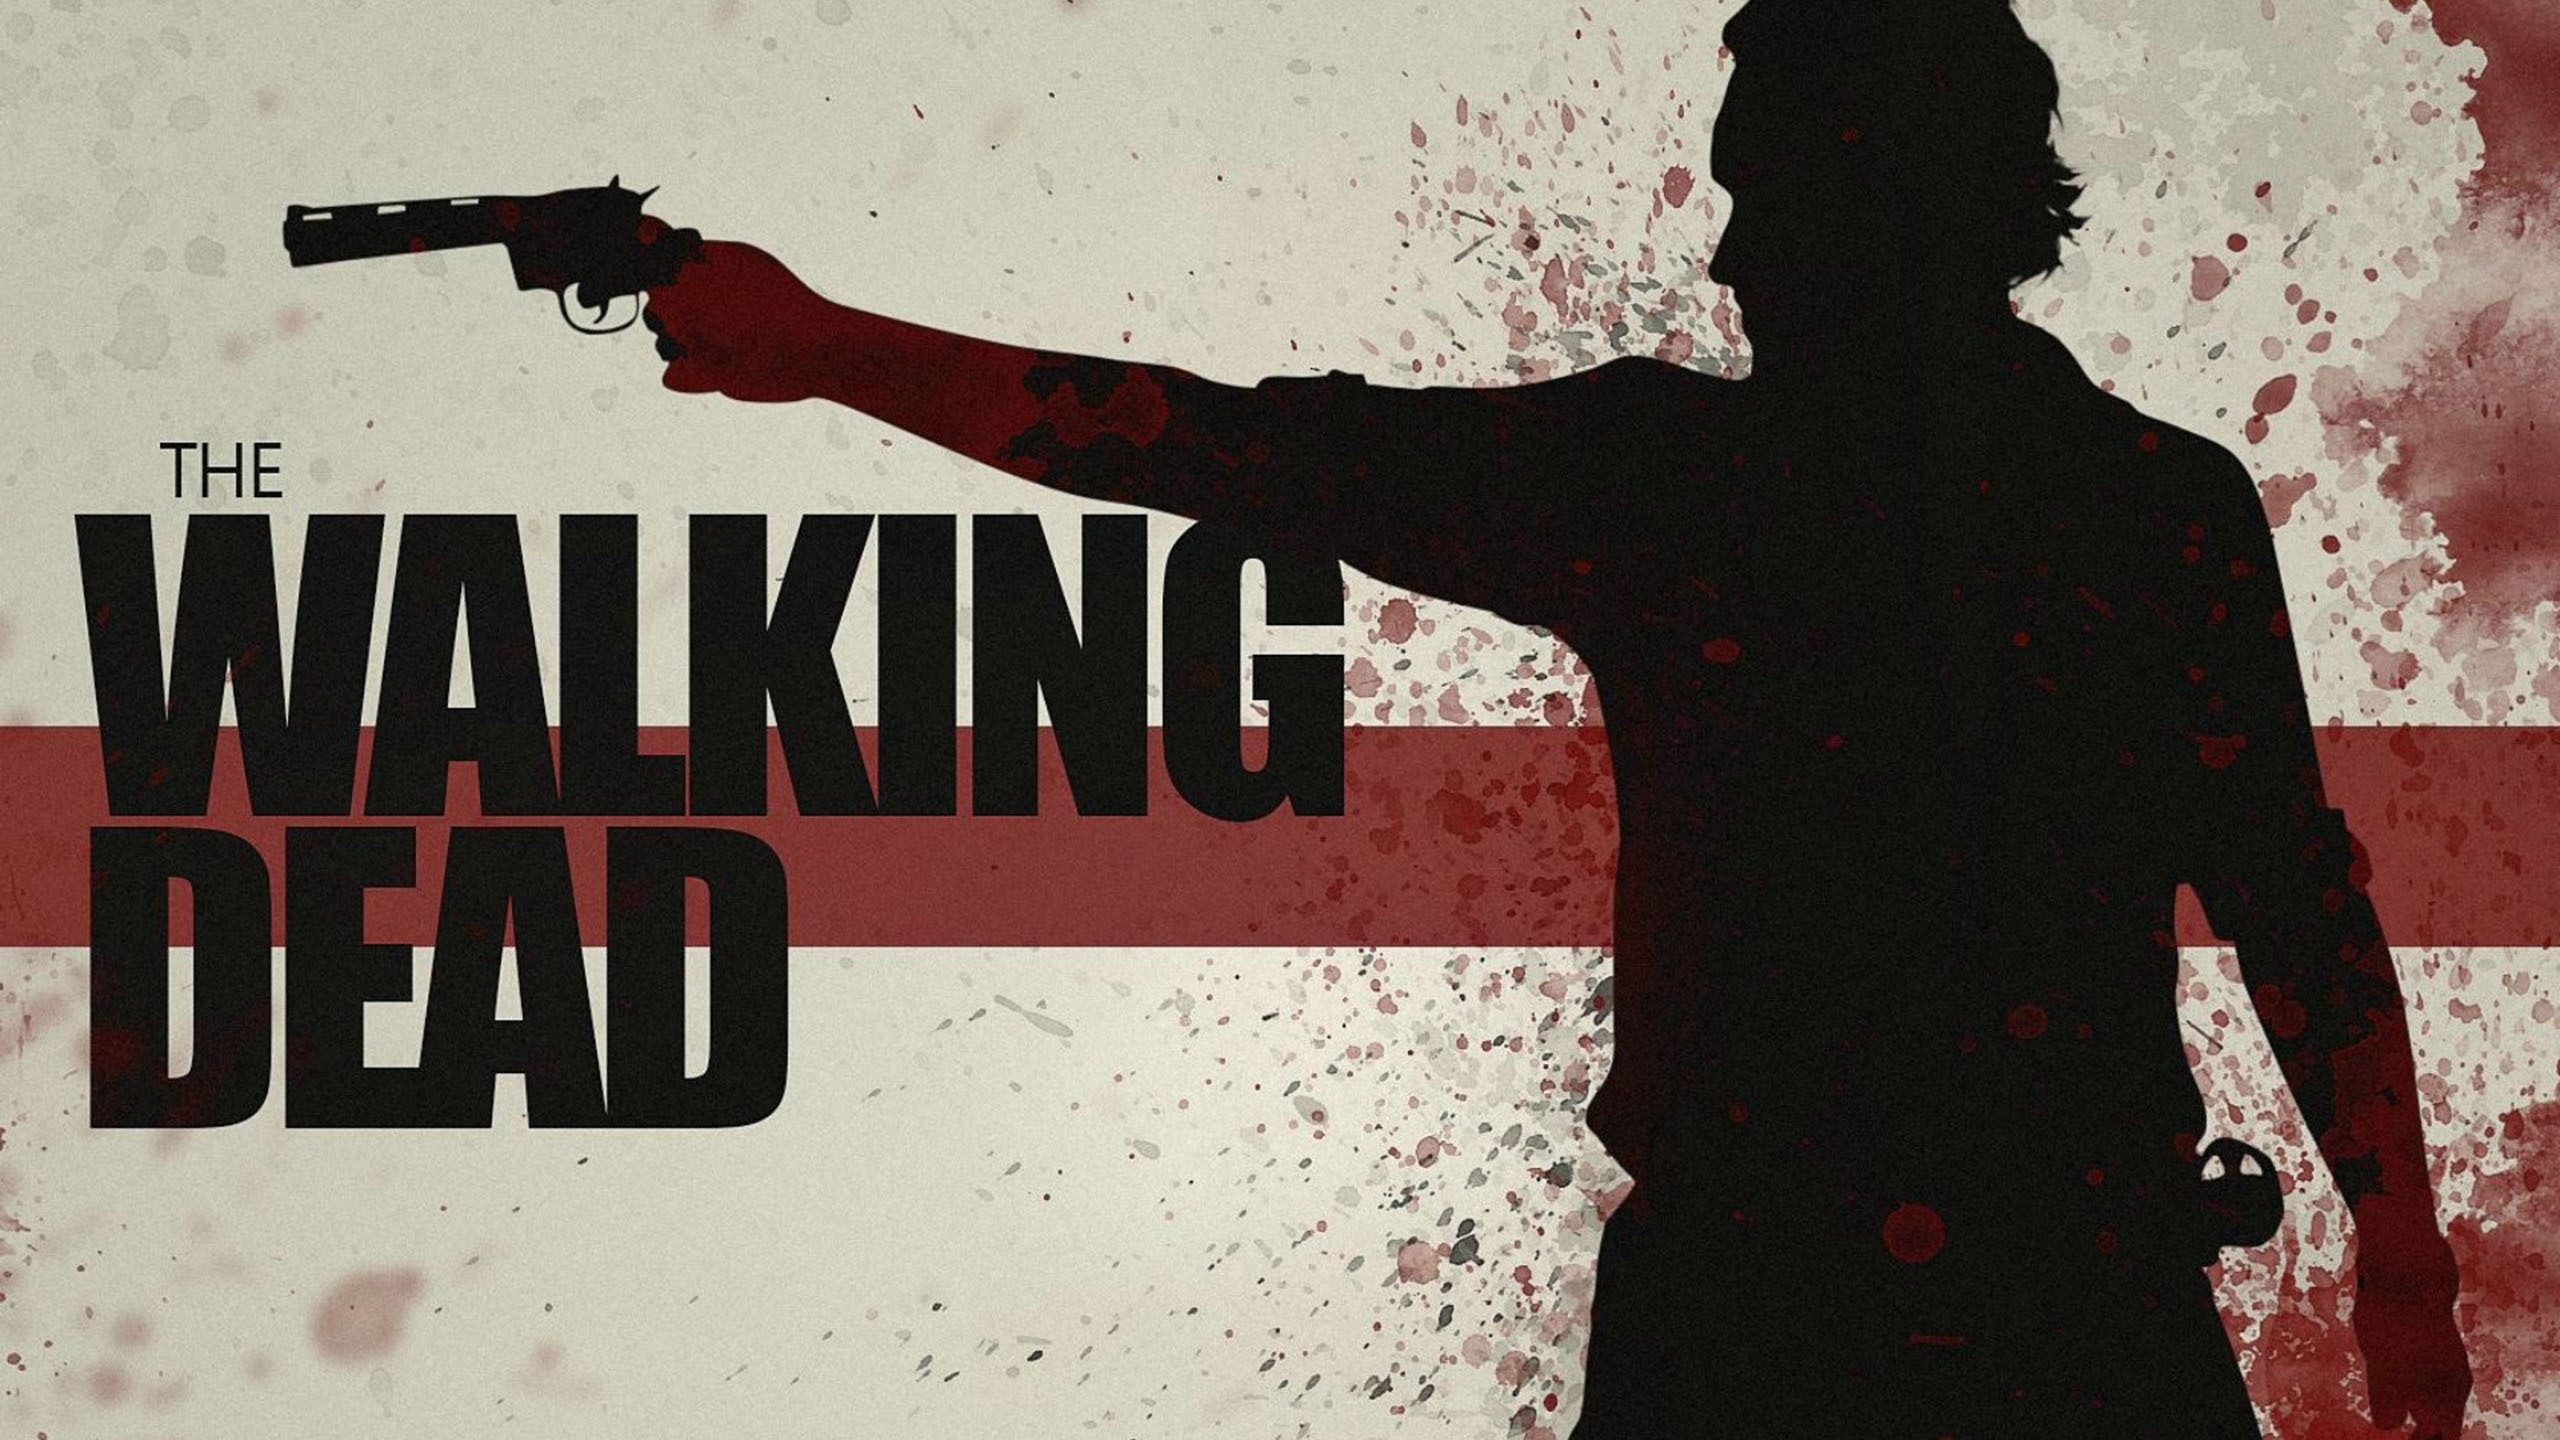 The Walking Dead Gun Poster for 2560x1440 HDTV resolution